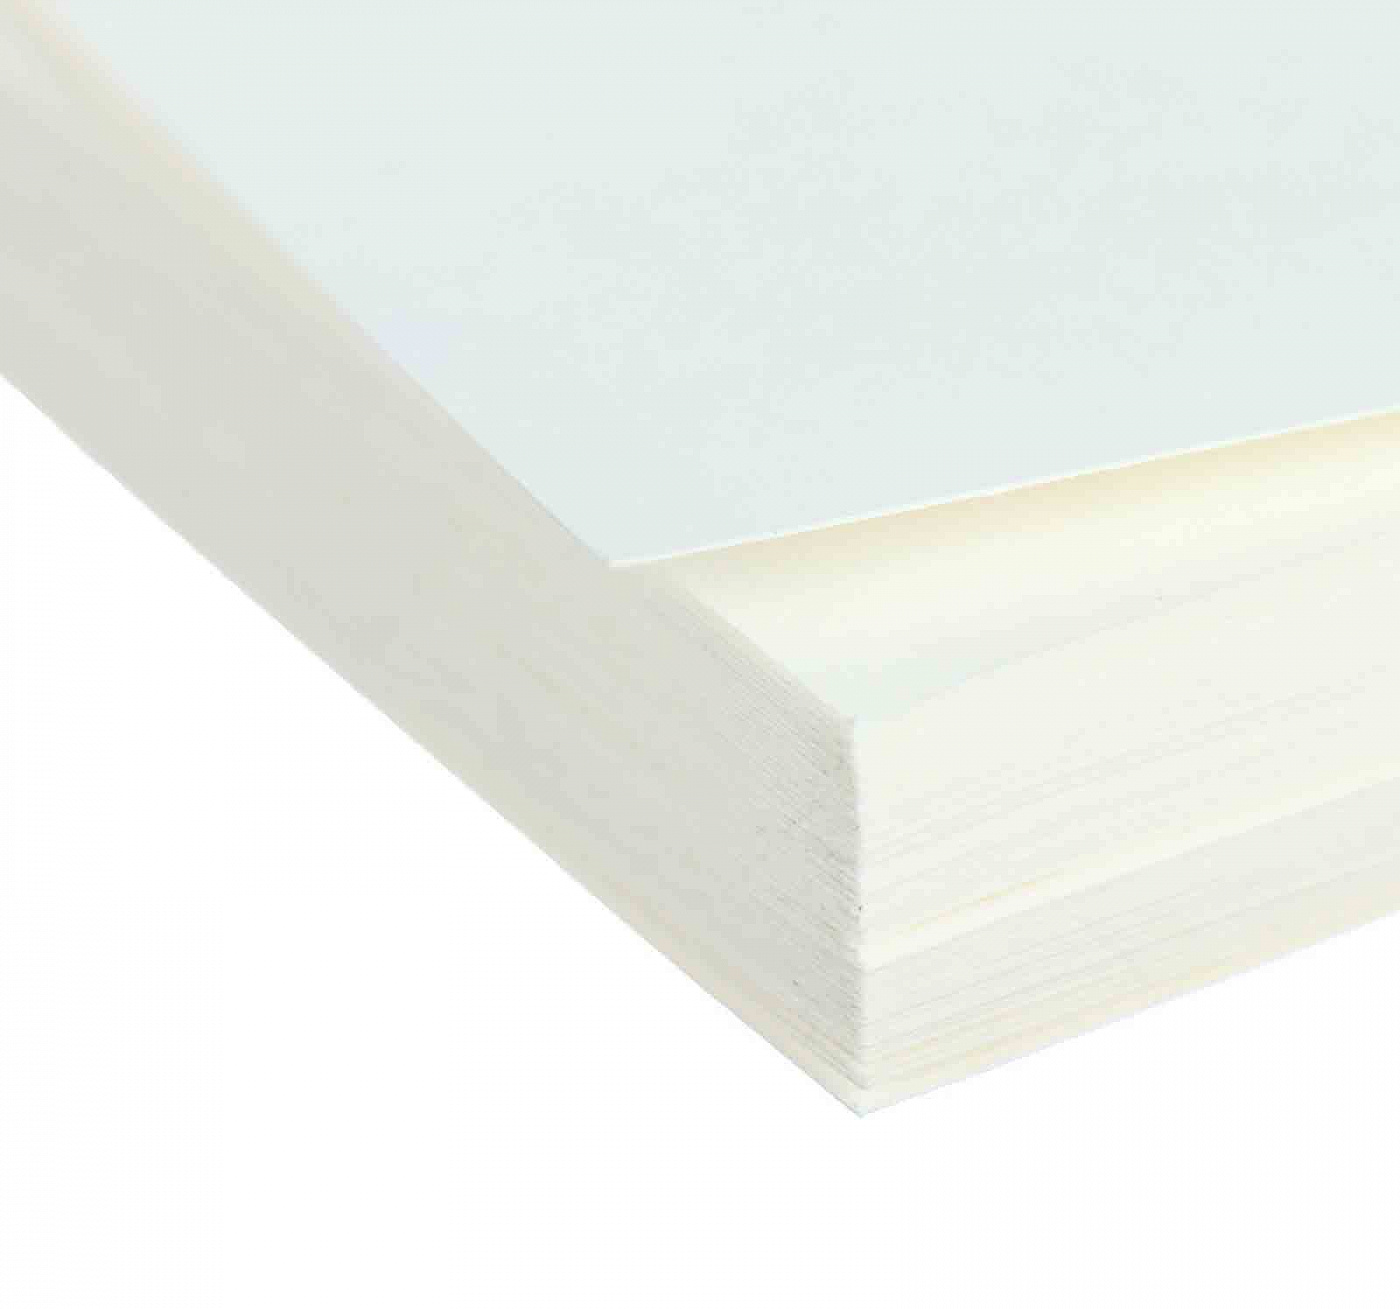 Бумага для акварели Лилия Холдинг А3 (297х420 мм) 200 г 50% хлопка бумага упаковочная 70 100см спб санкт петербург мел инд уп